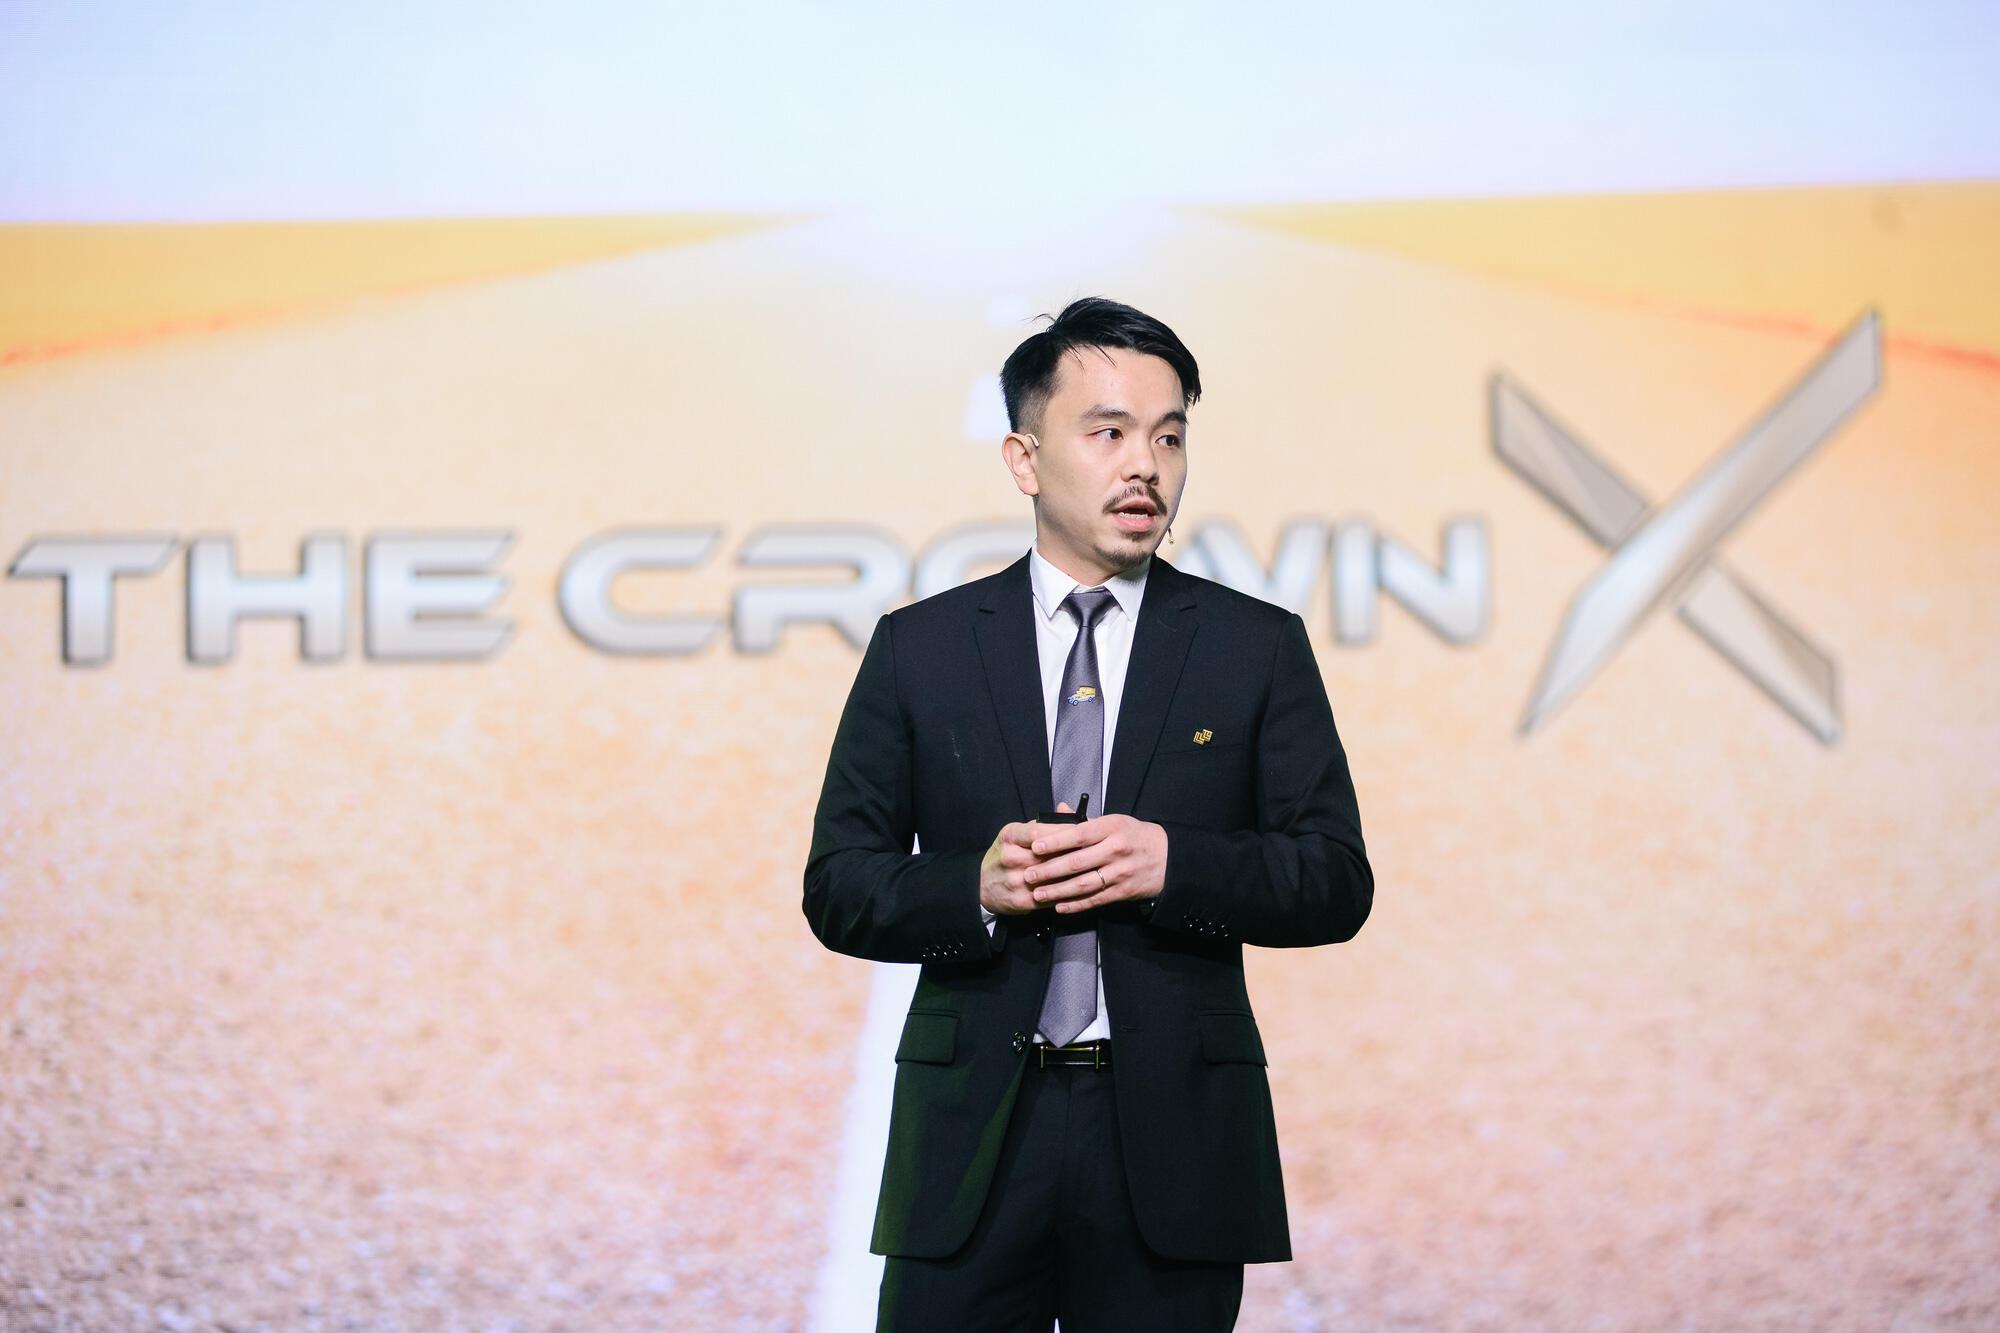 The CrownX của Masan nhận thêm khoản đầu tư 350 triệu USD từ UAE, giá mỗi cổ phần The CrownX đạt 105 USD - Ảnh 3.